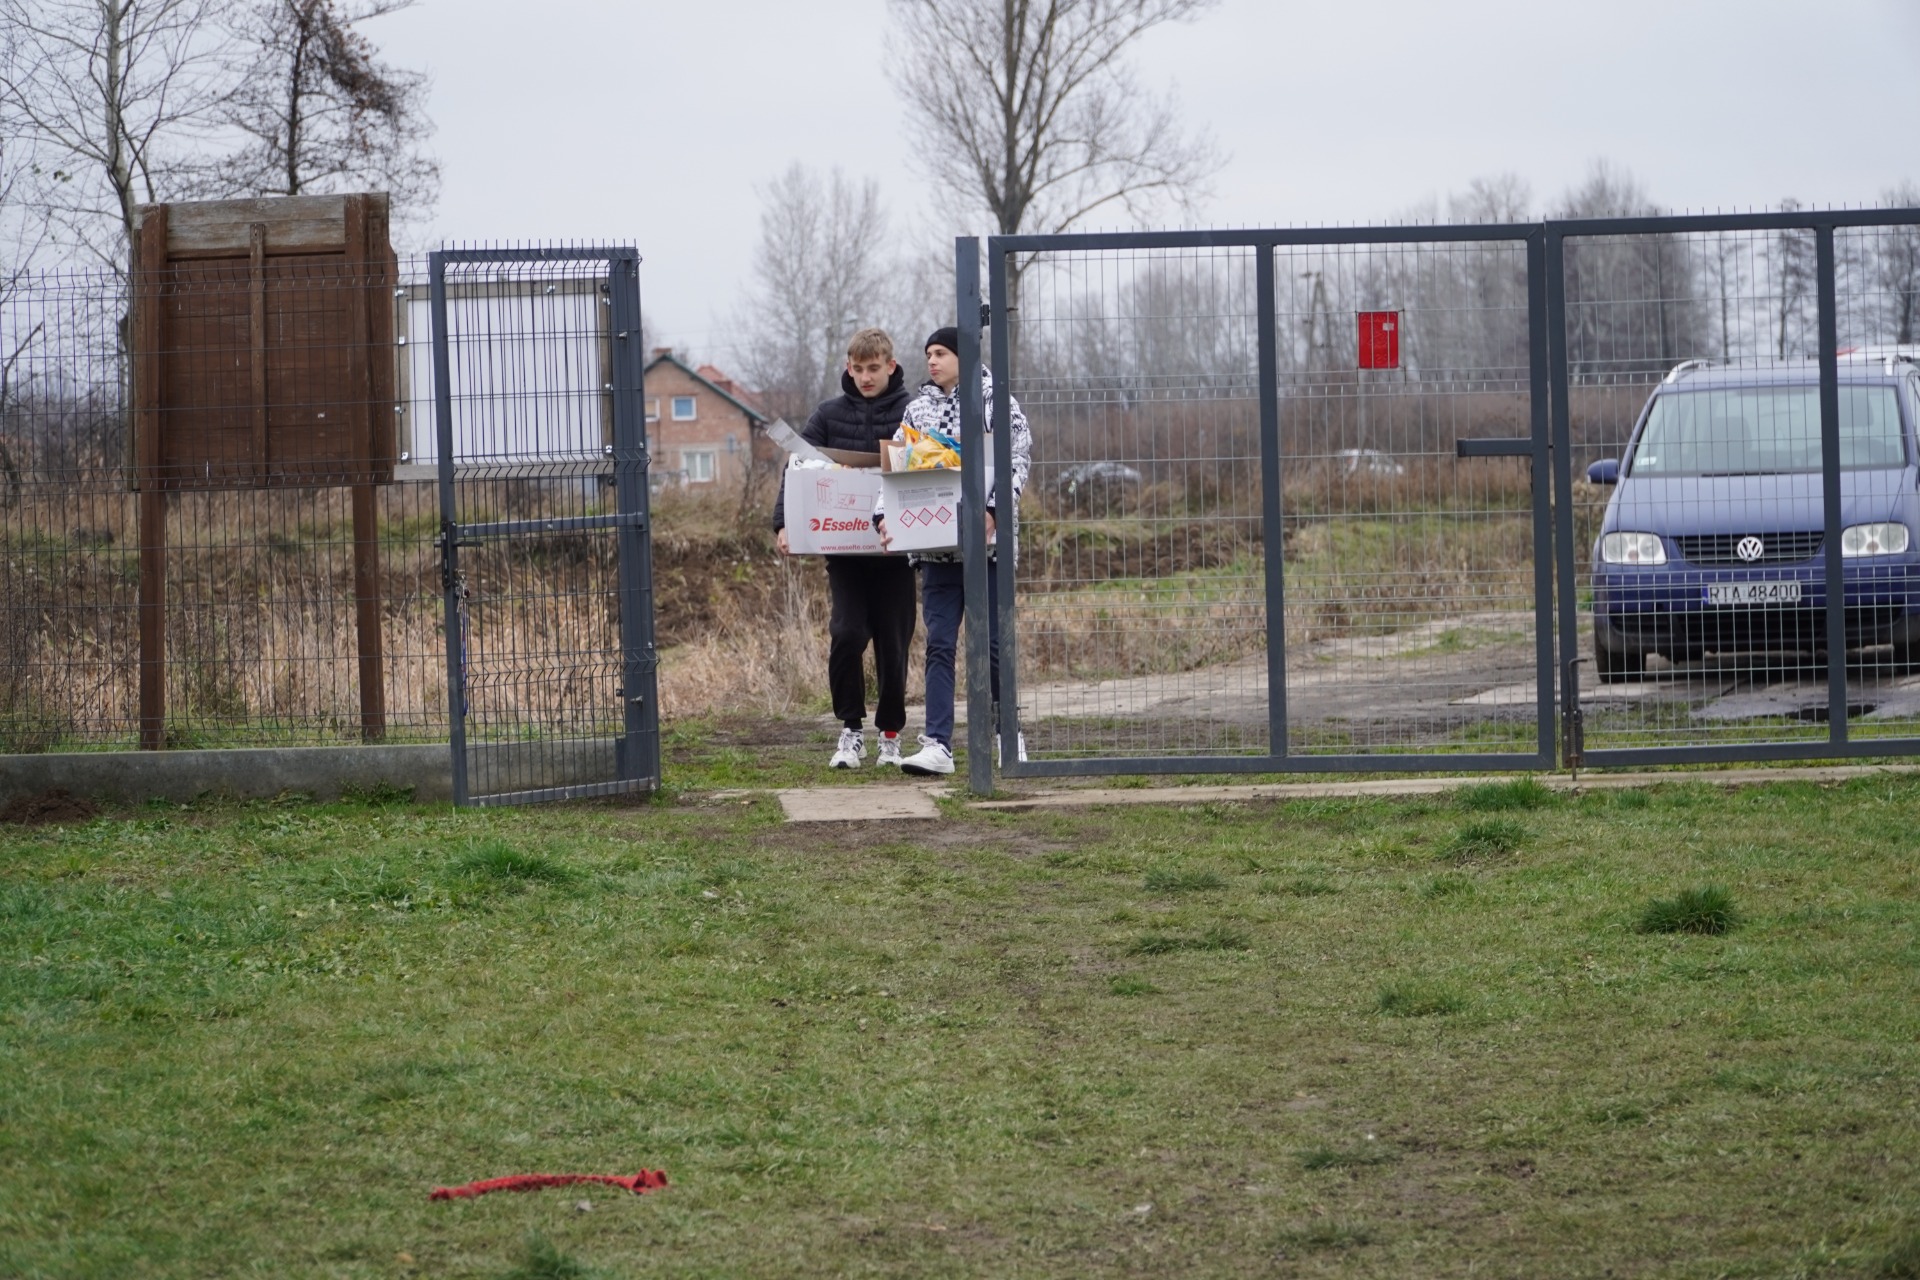 Członkowie Samorządu Uczniowskiego rozładowują karmę uzbieraną przez dzieci w szkole.